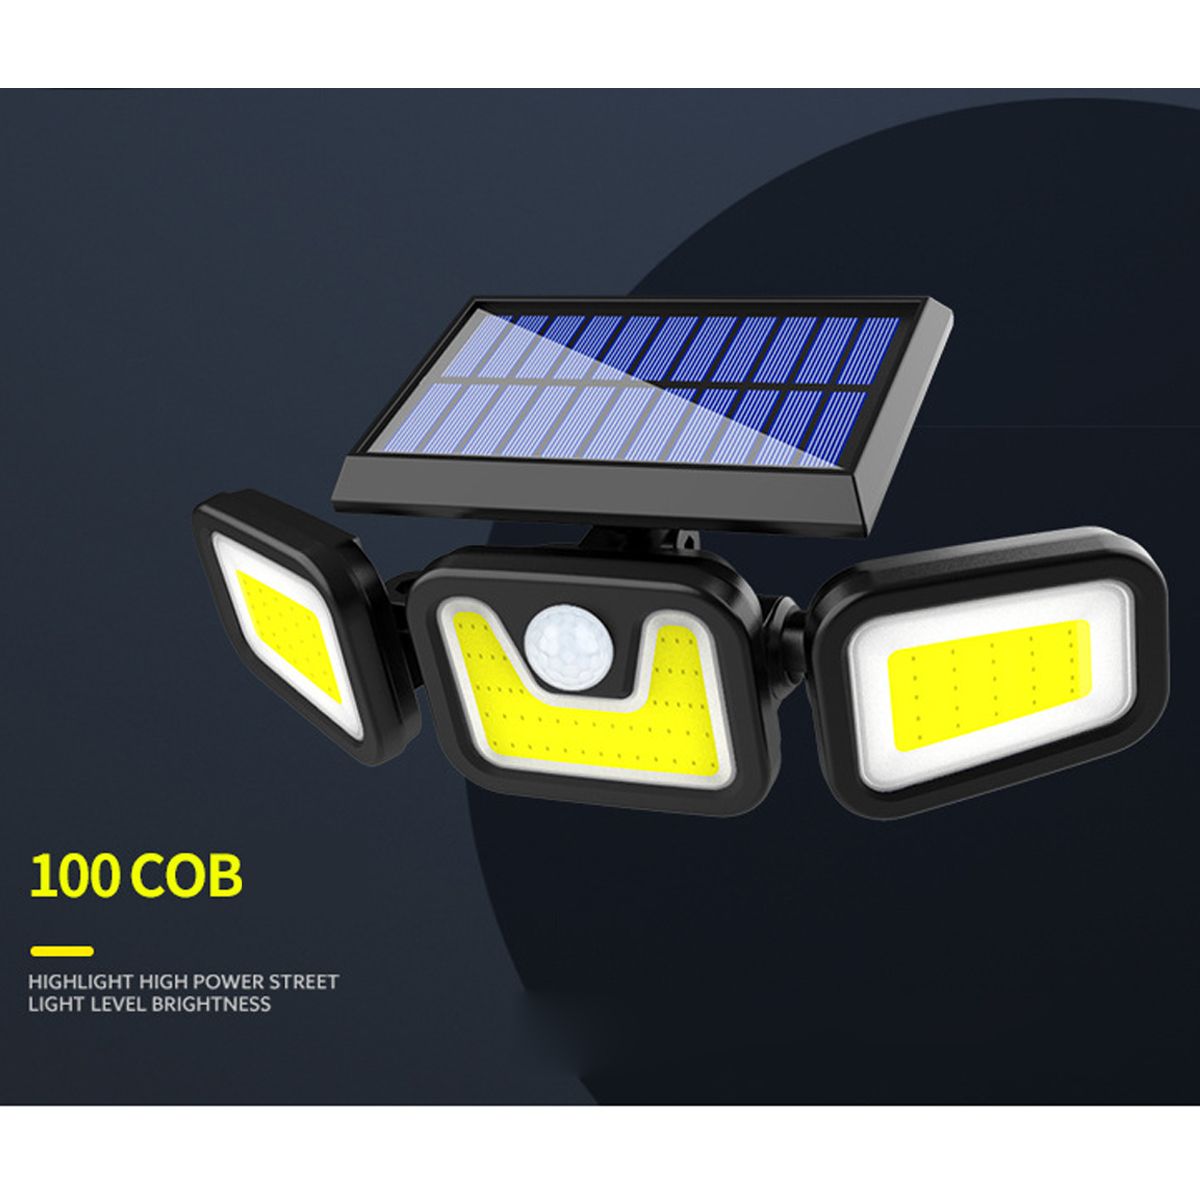 74LED100COB-Solar-Street-Wall-Light-PIR-Motion-Sensor-Waterproof-Garden-Spotlight-Lamp-1712557